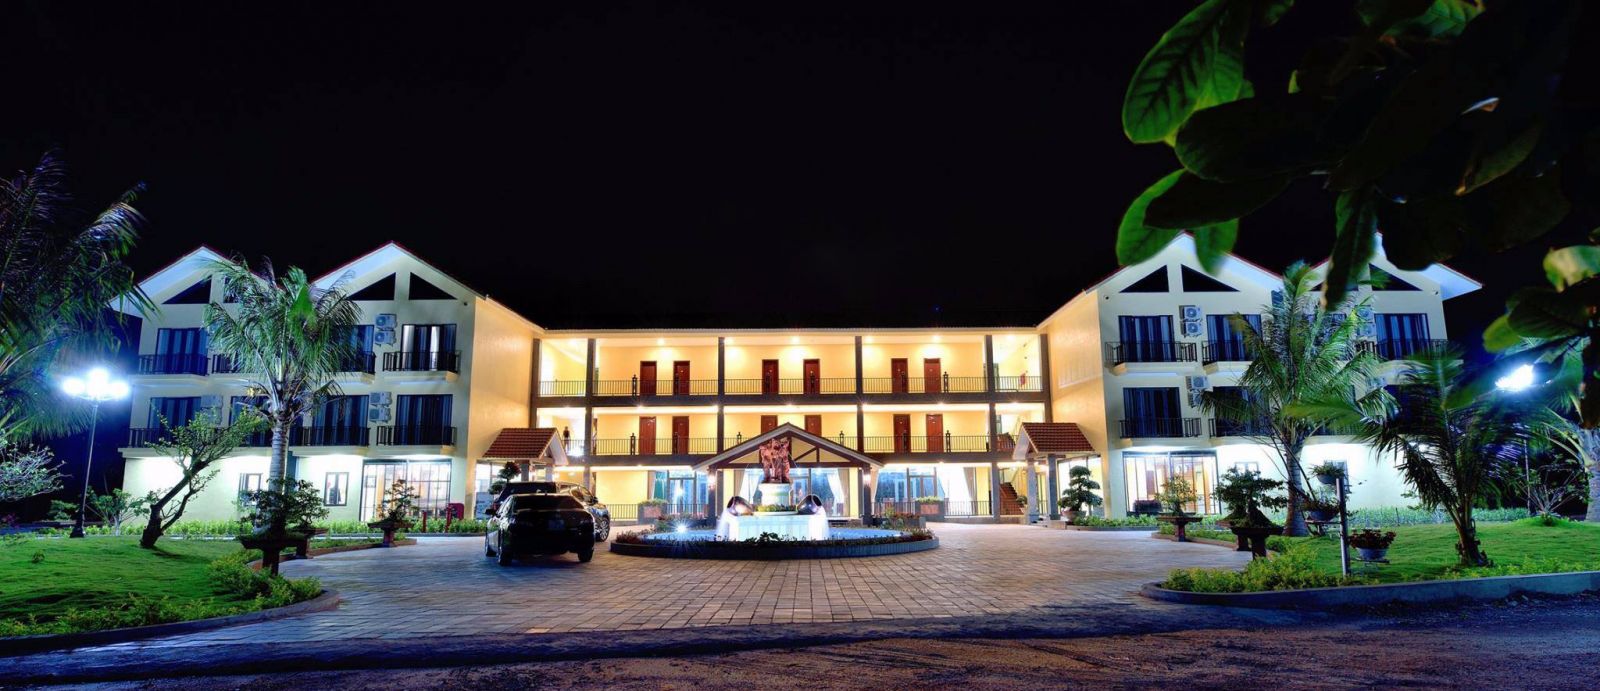 Khách sạn Cồn Đen - Thái Bình khi về đêm